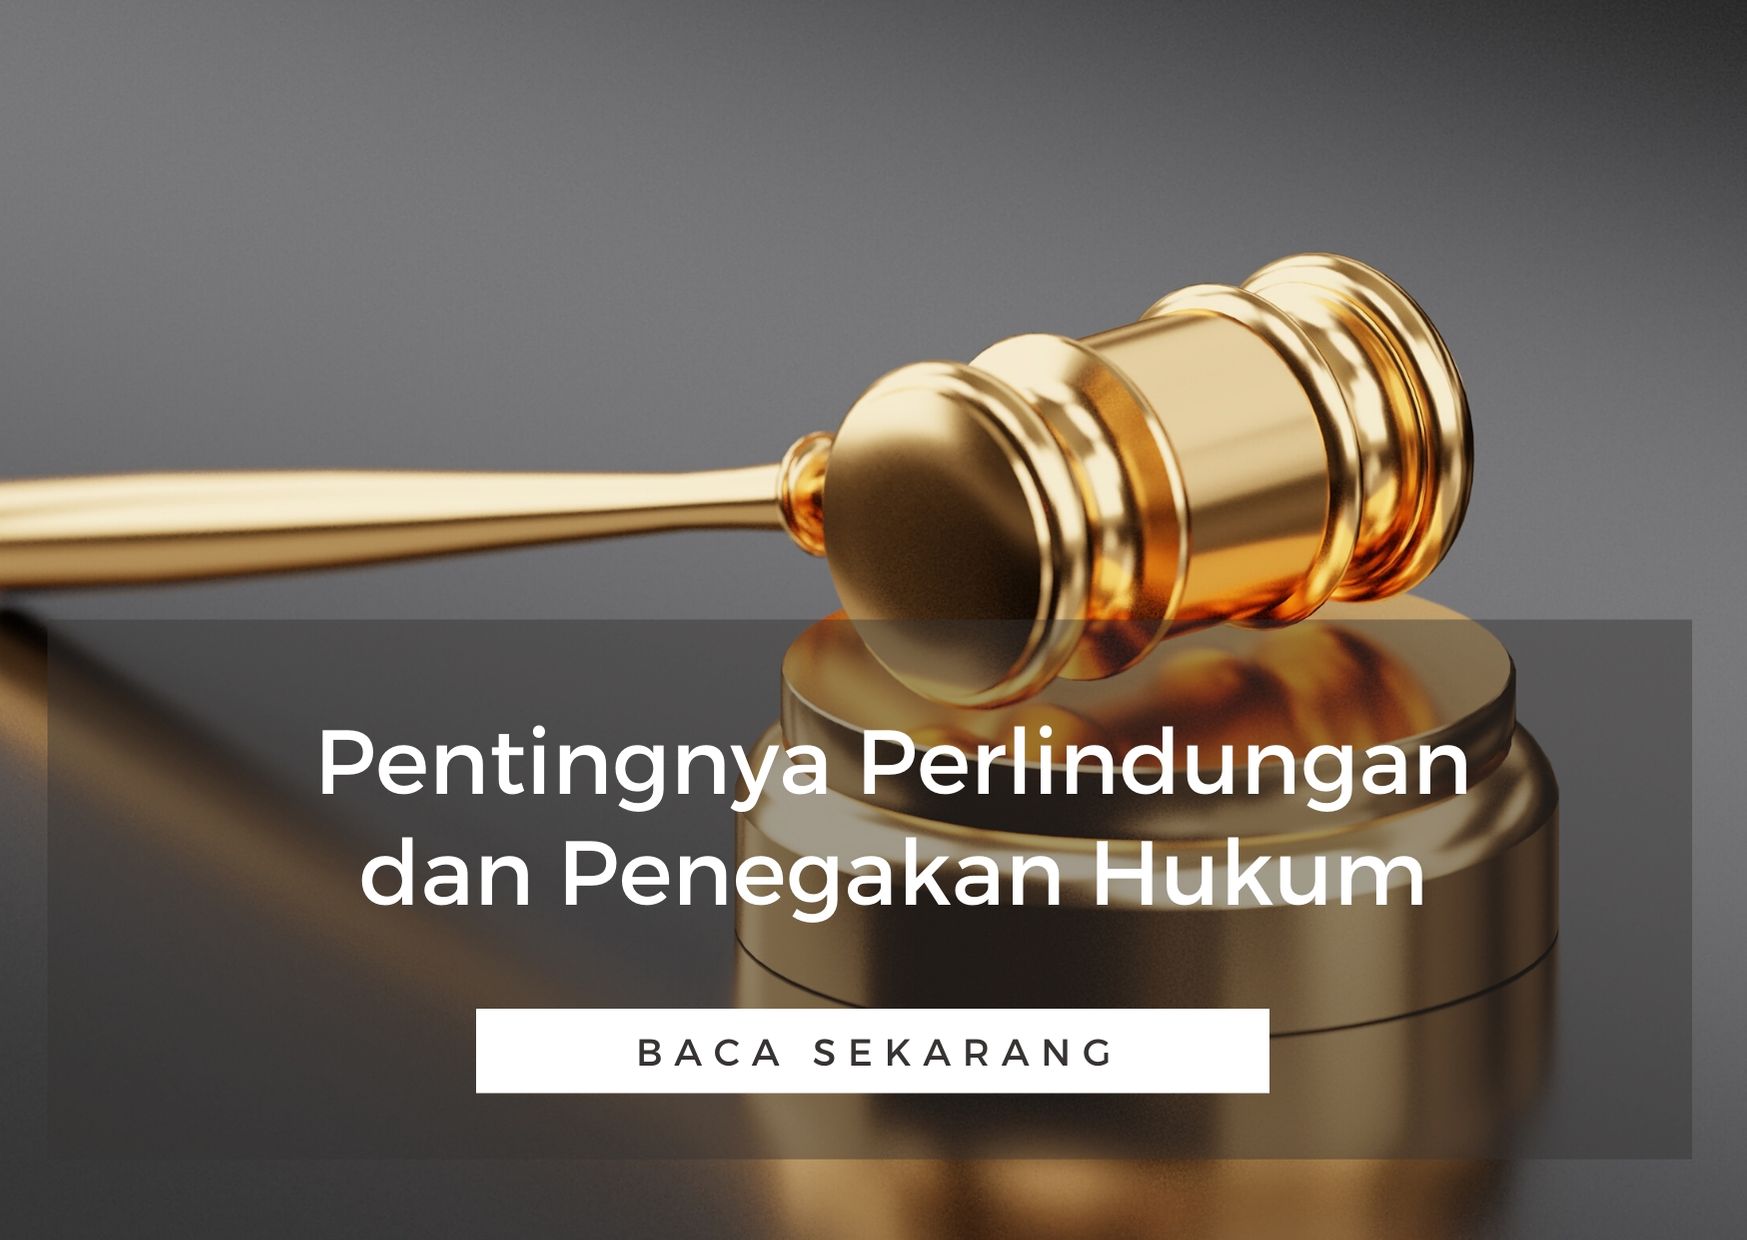 Hukum pelaksana sebagai adalah hakim dan perlindungan dalam penegakan peran PERANAN POLRI